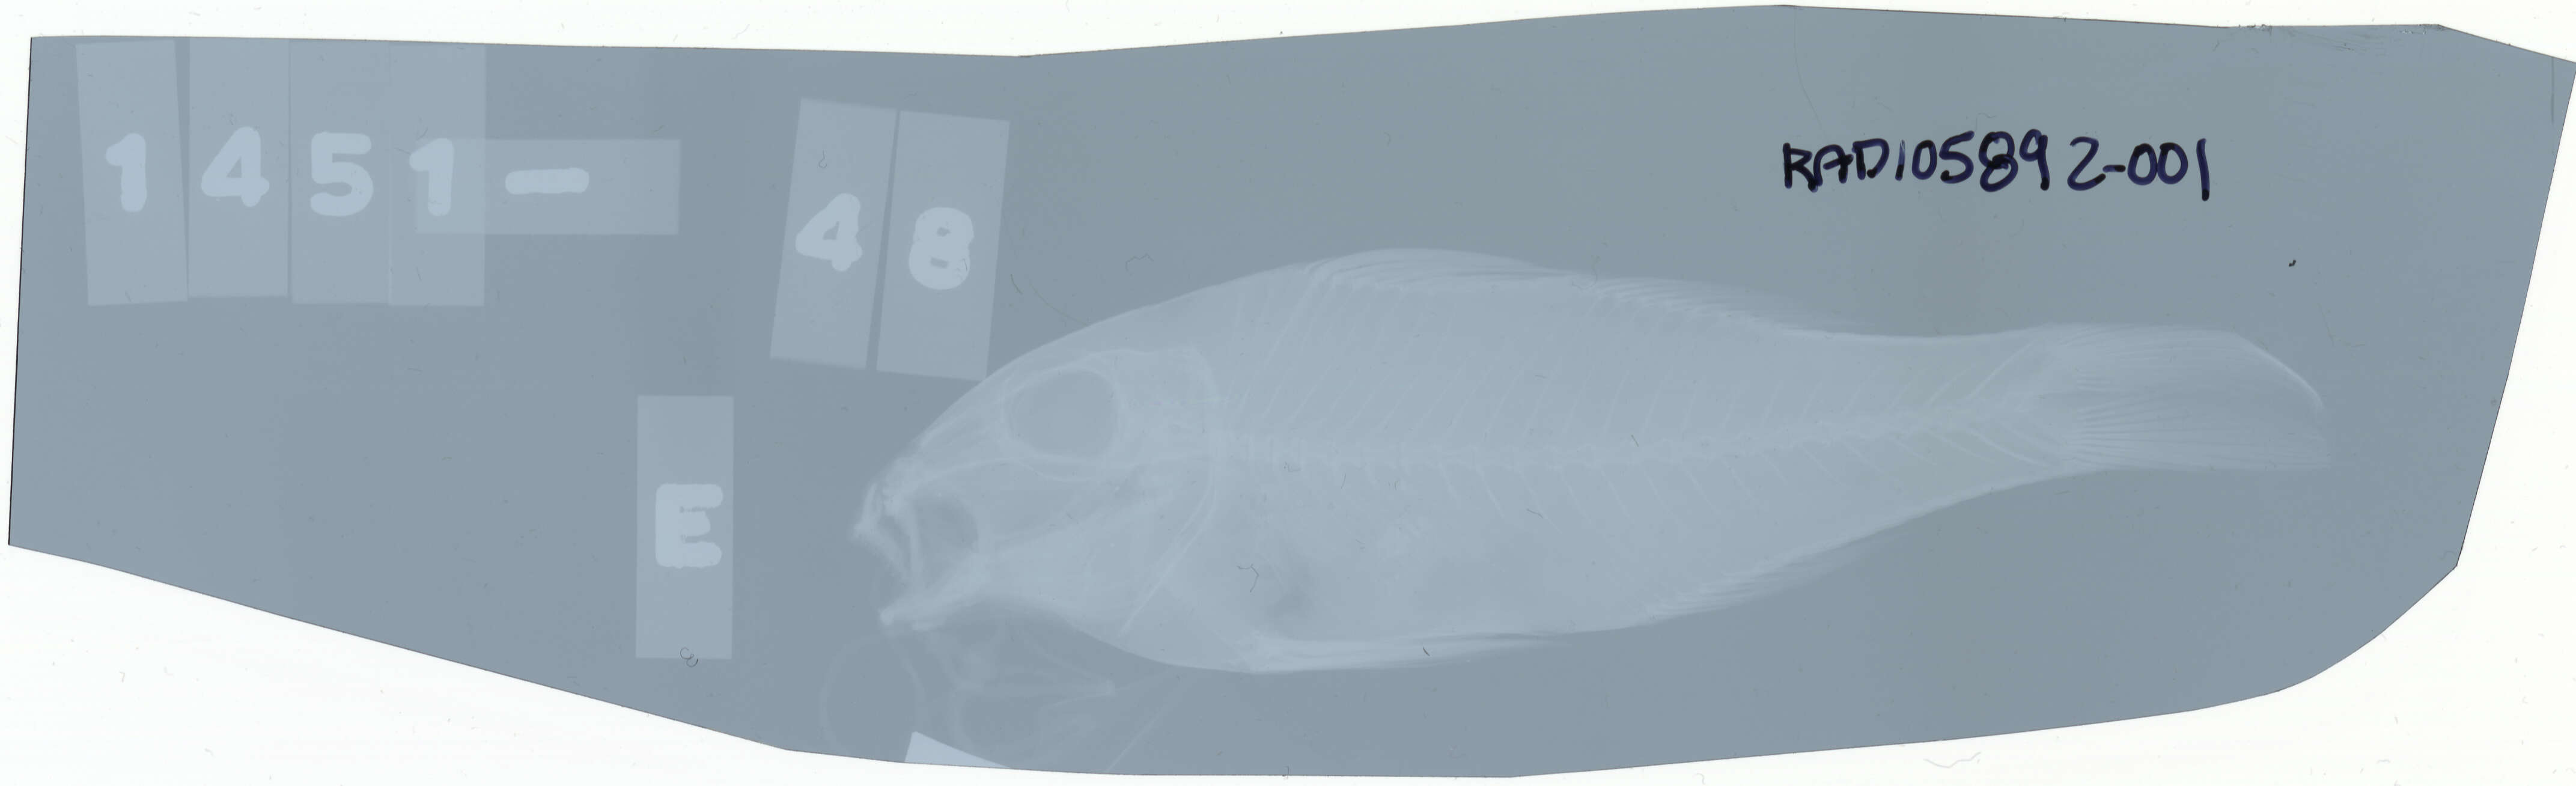 Image of Doublebar goatfish